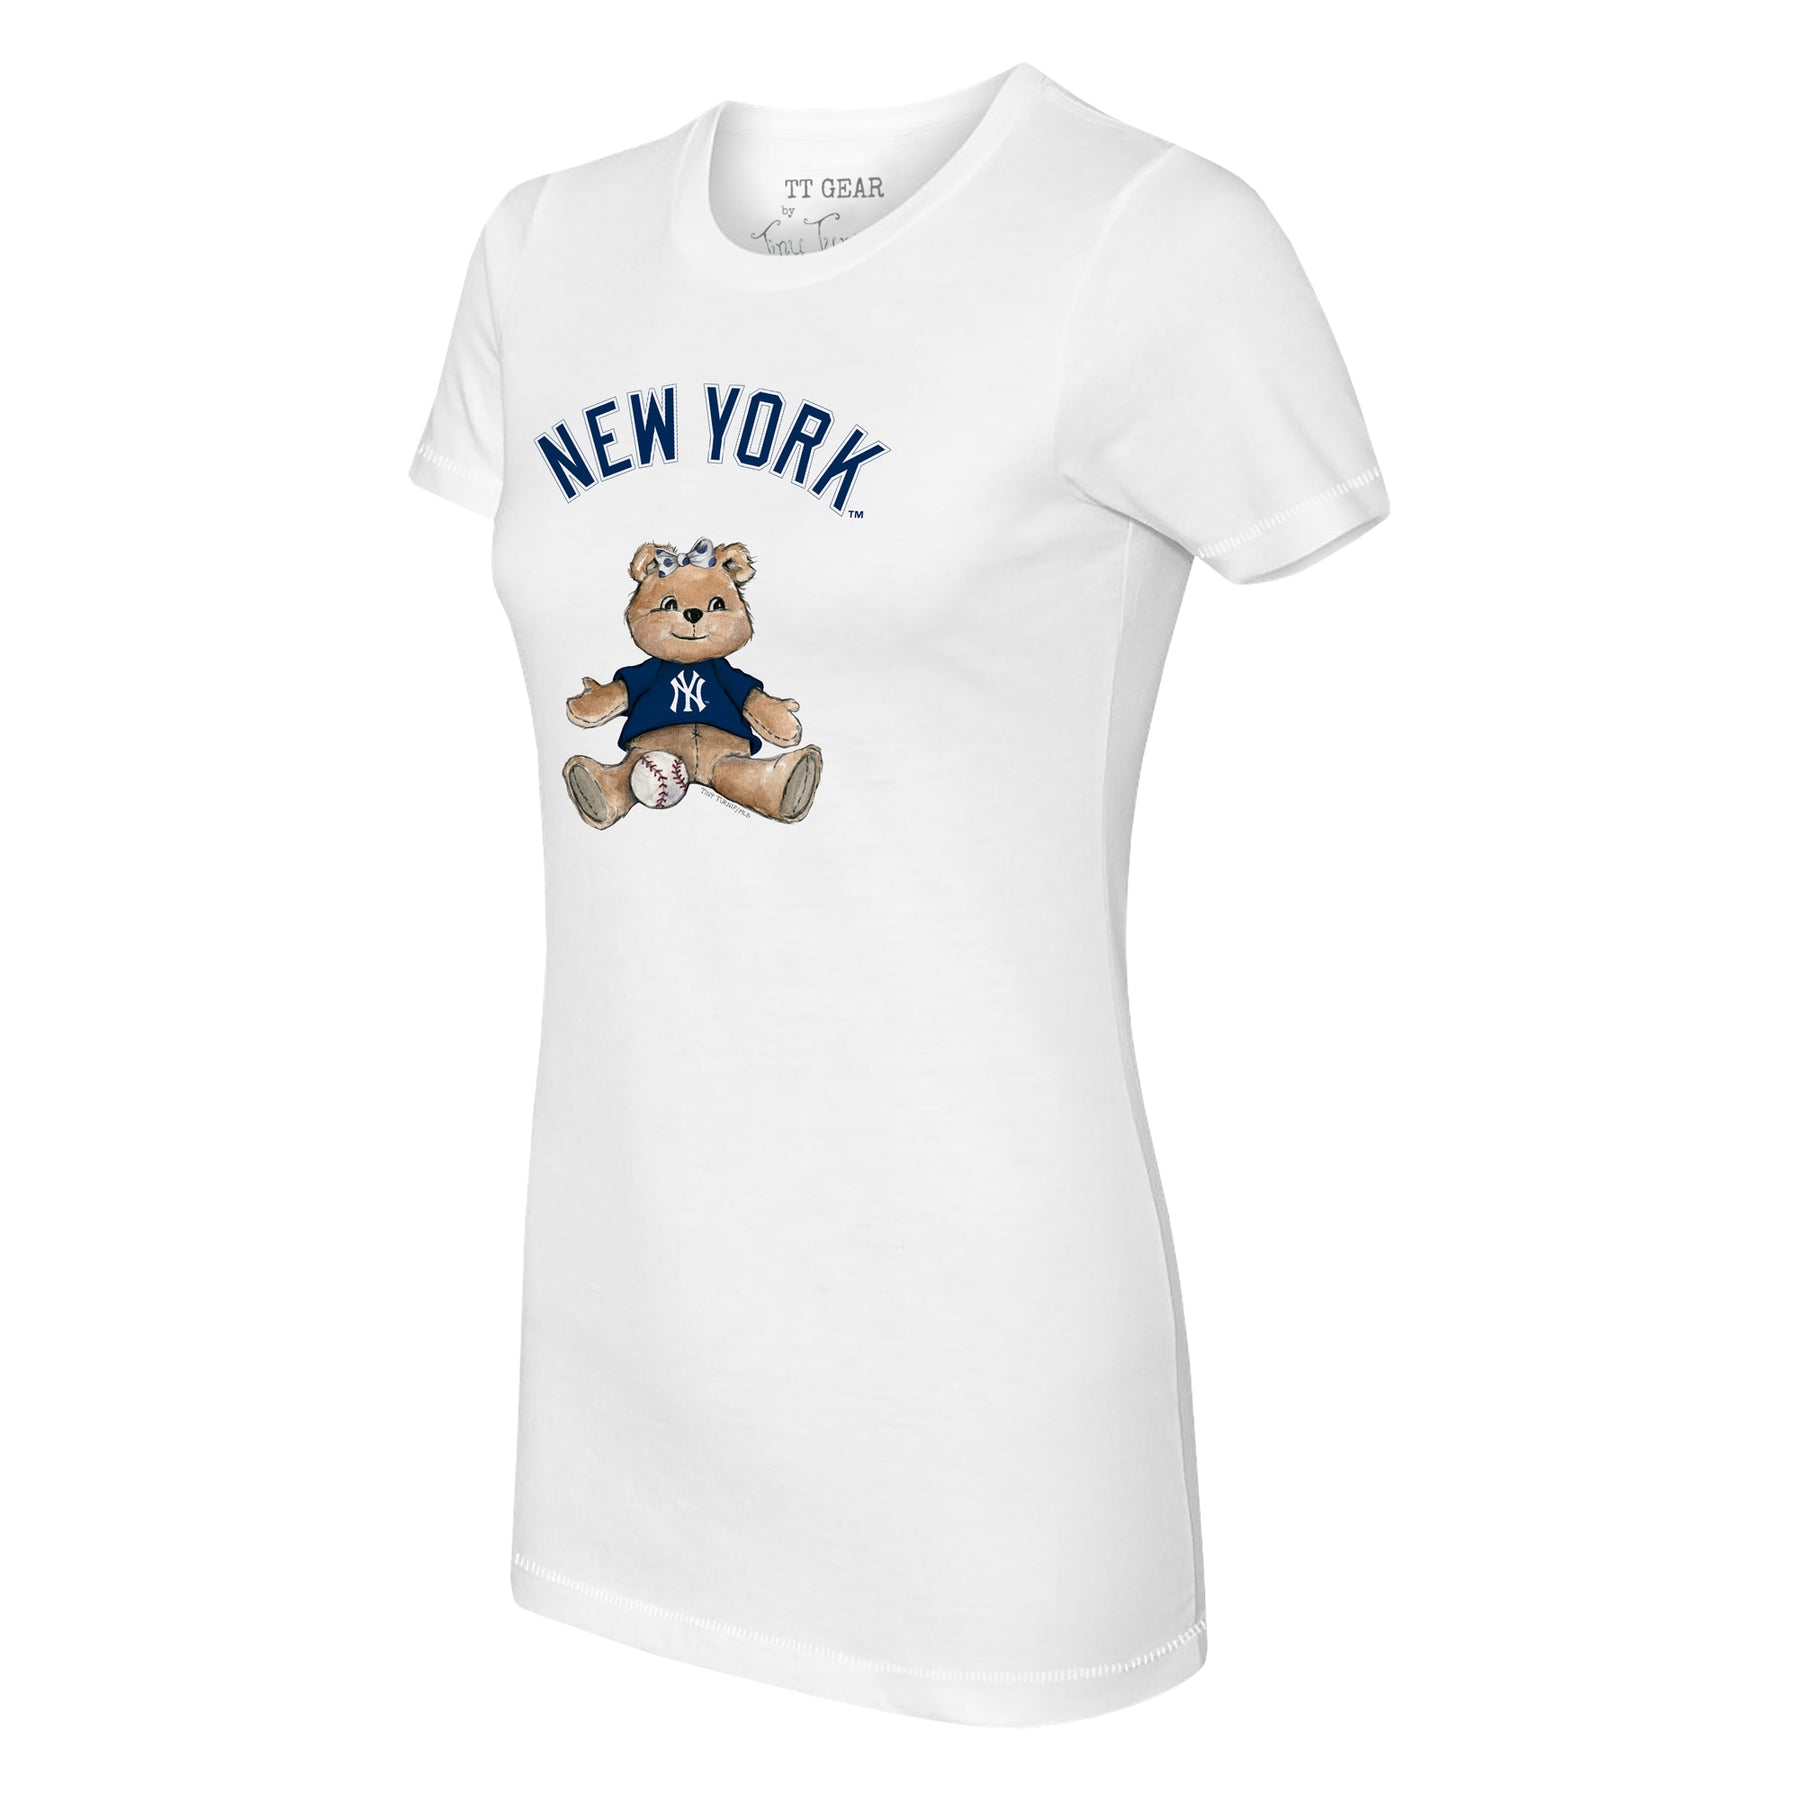 New York Yankees Tiny Turnip Women's Sundae Helmet T-Shirt - White